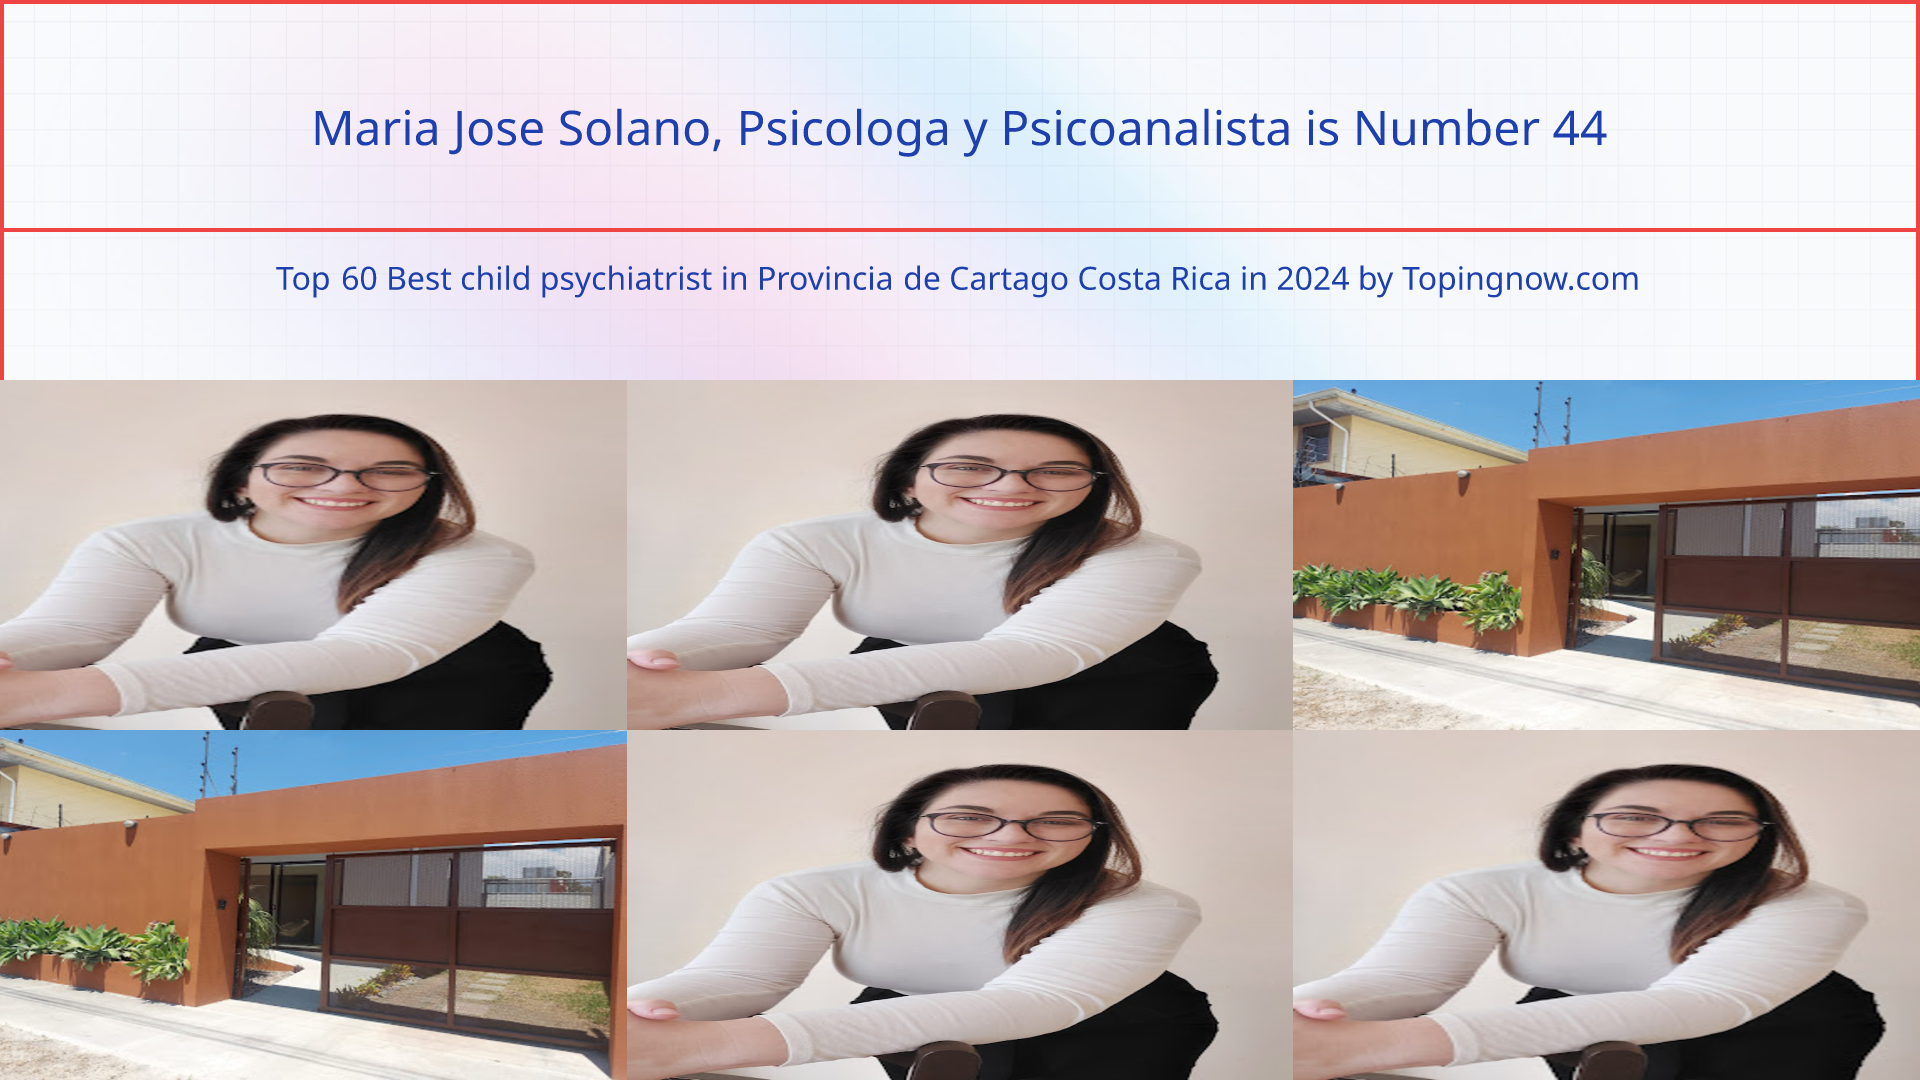 Maria Jose Solano, Psicologa y Psicoanalista: Top 60 Best child psychiatrist in Provincia de Cartago Costa Rica in 2024